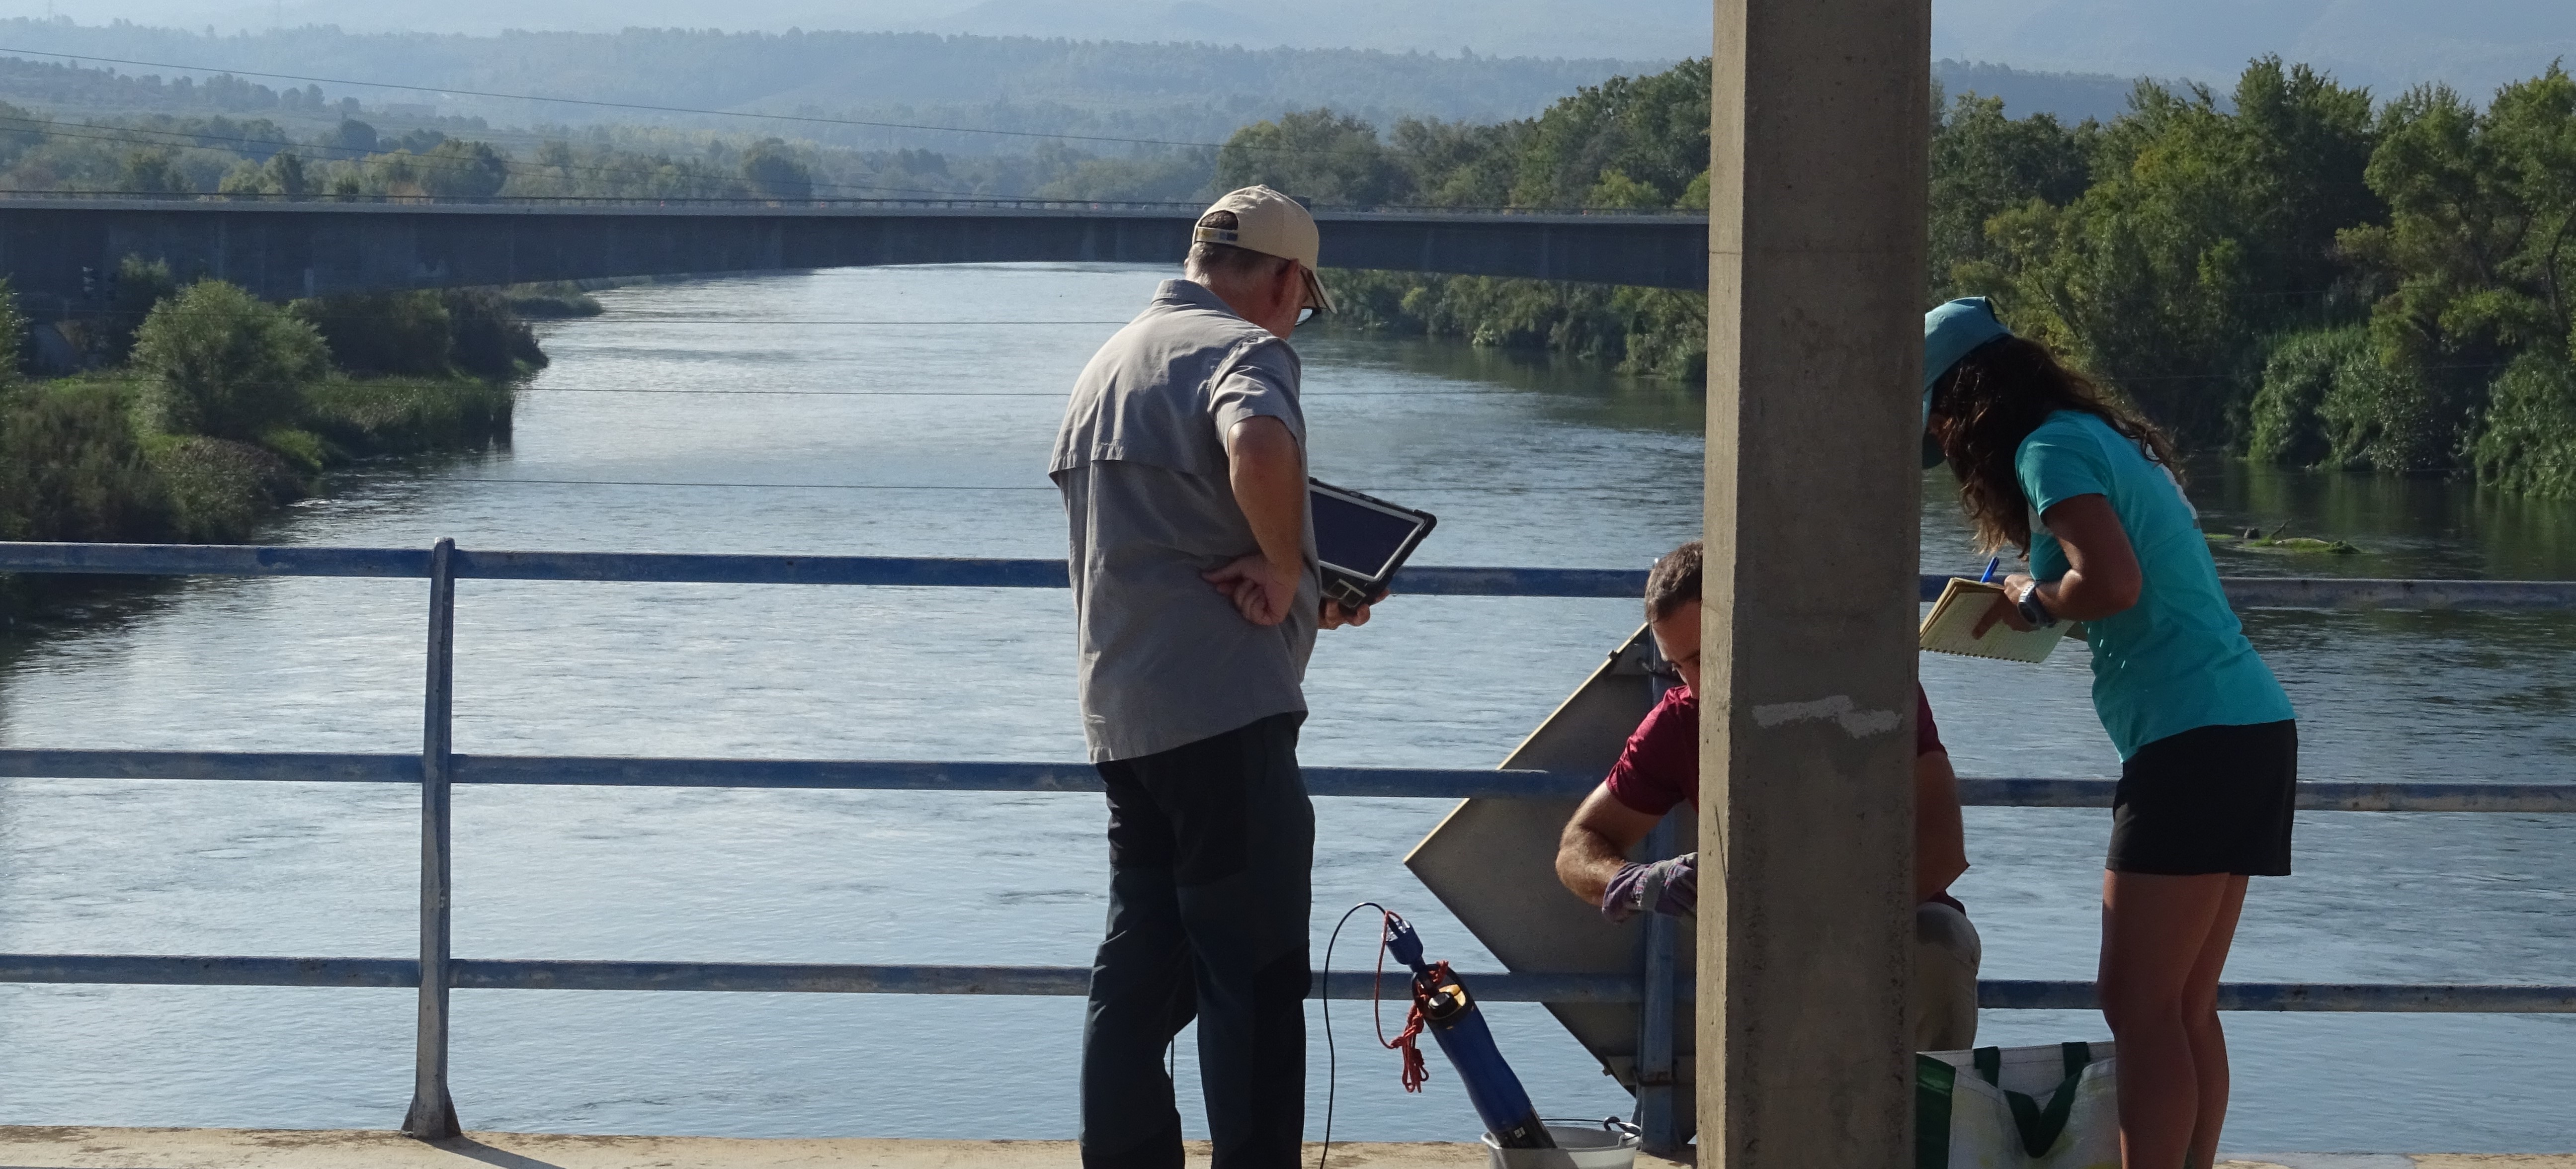 La CHE estudia el estado del tramo bajo del Ebro para para evaluar las condiciones ambientales del río en época de sequía